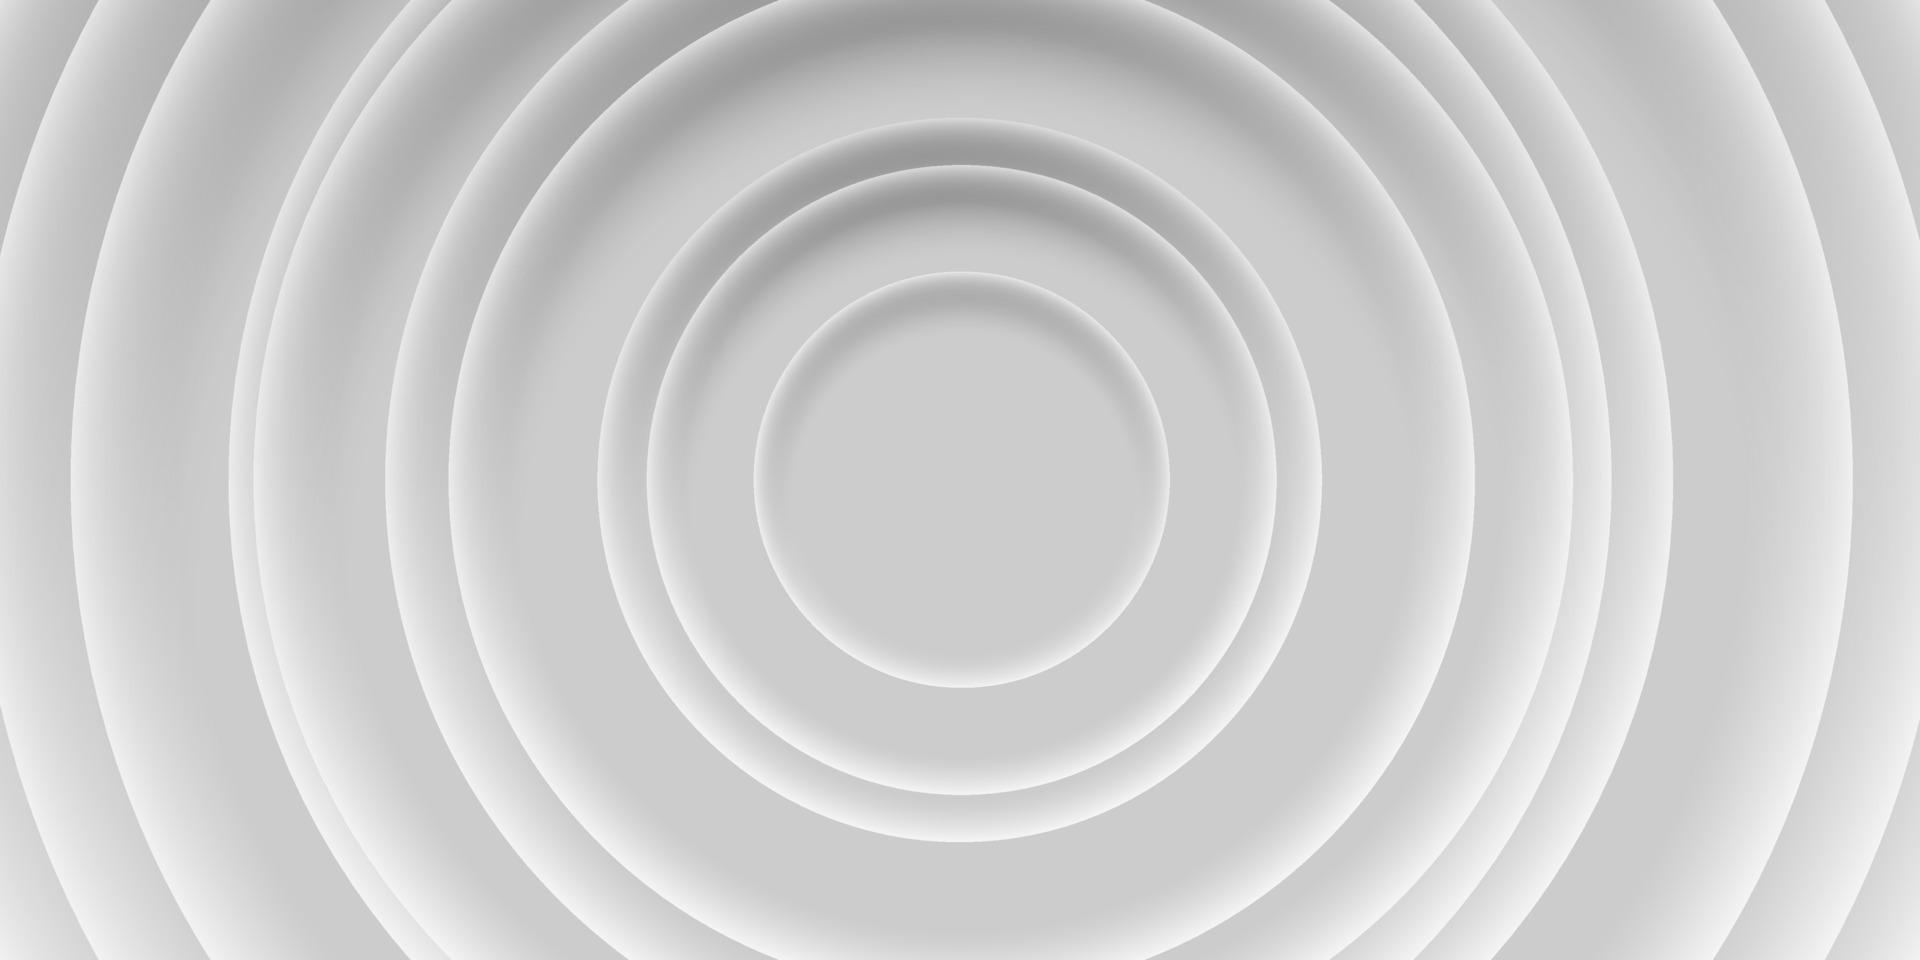 gris, fondo blanco de círculos con sombras, material estilo 3d vector